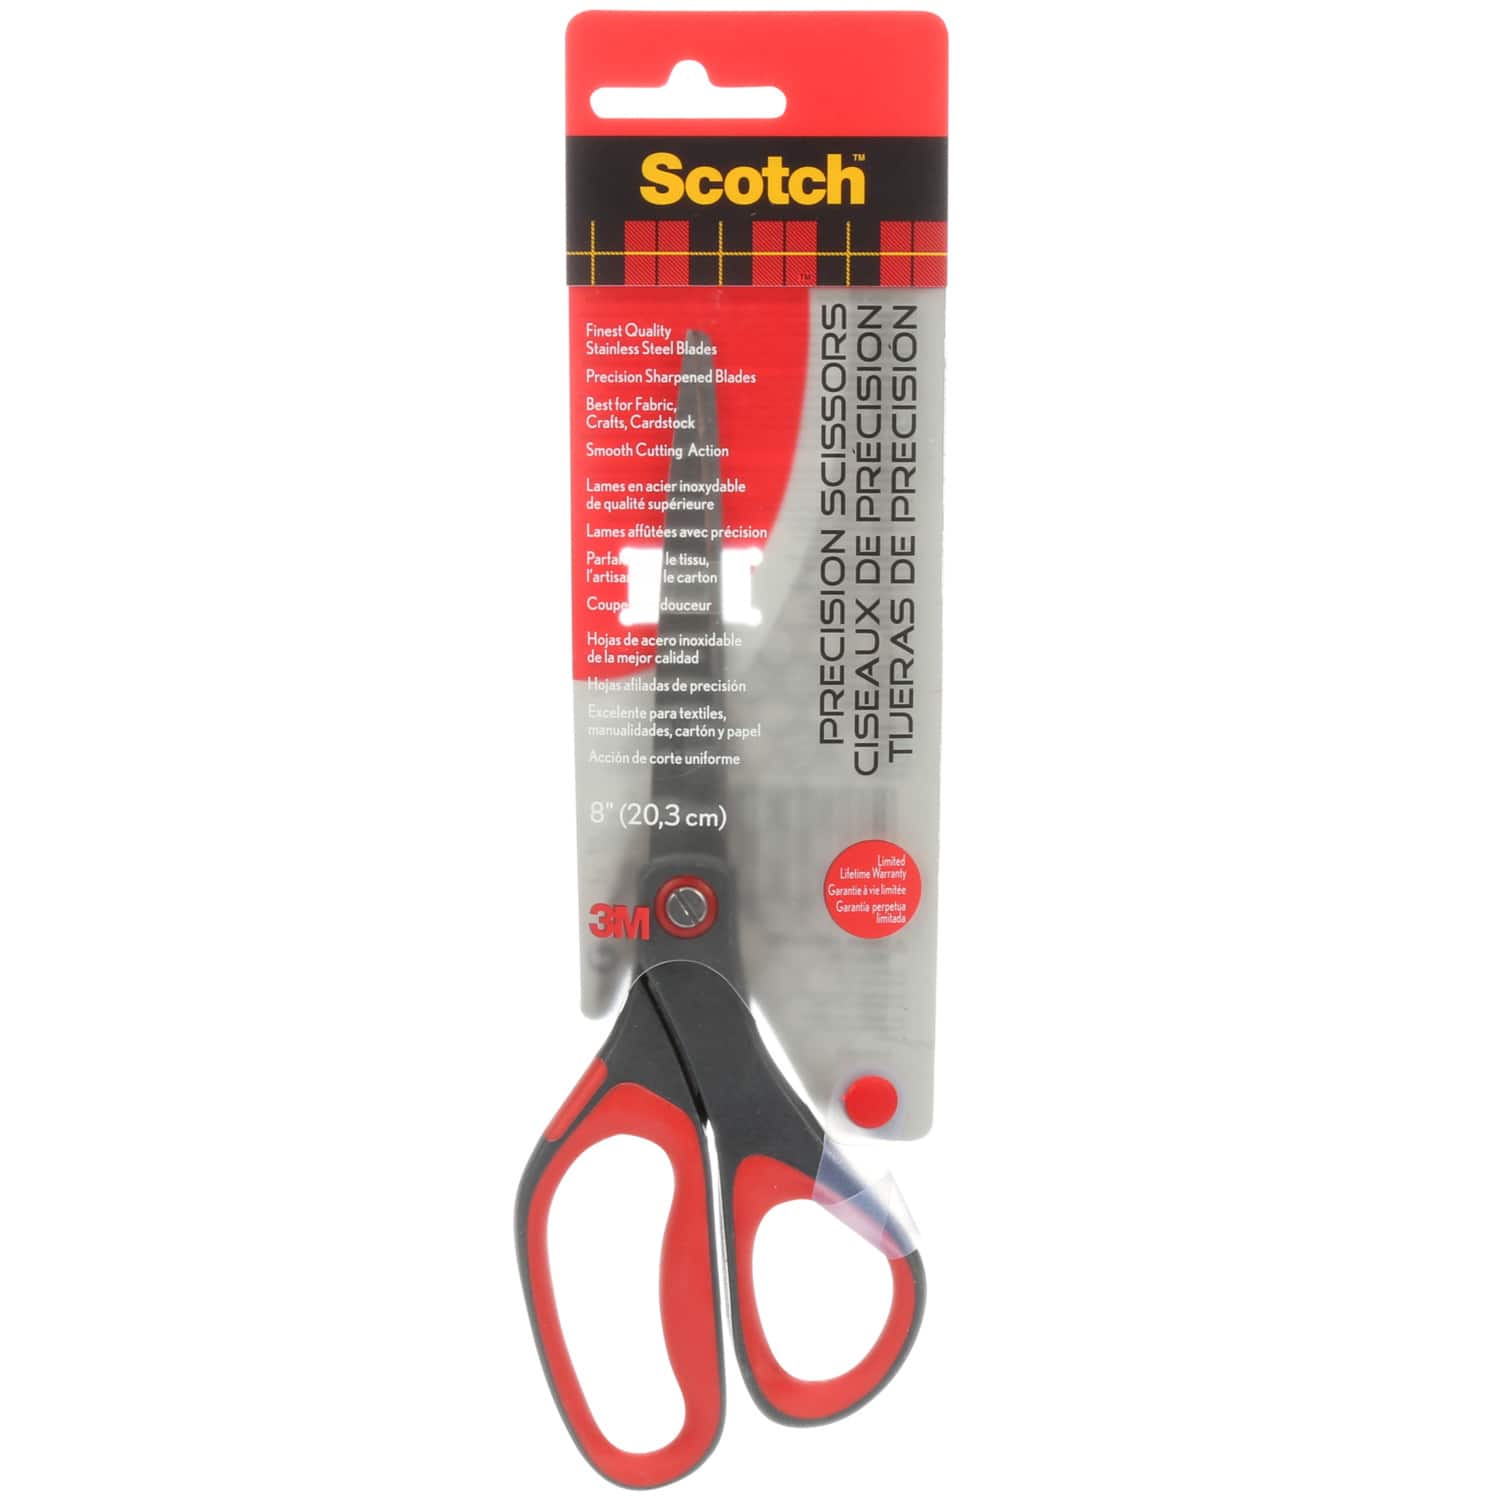 Scotch 8 Precision Scissors - Each